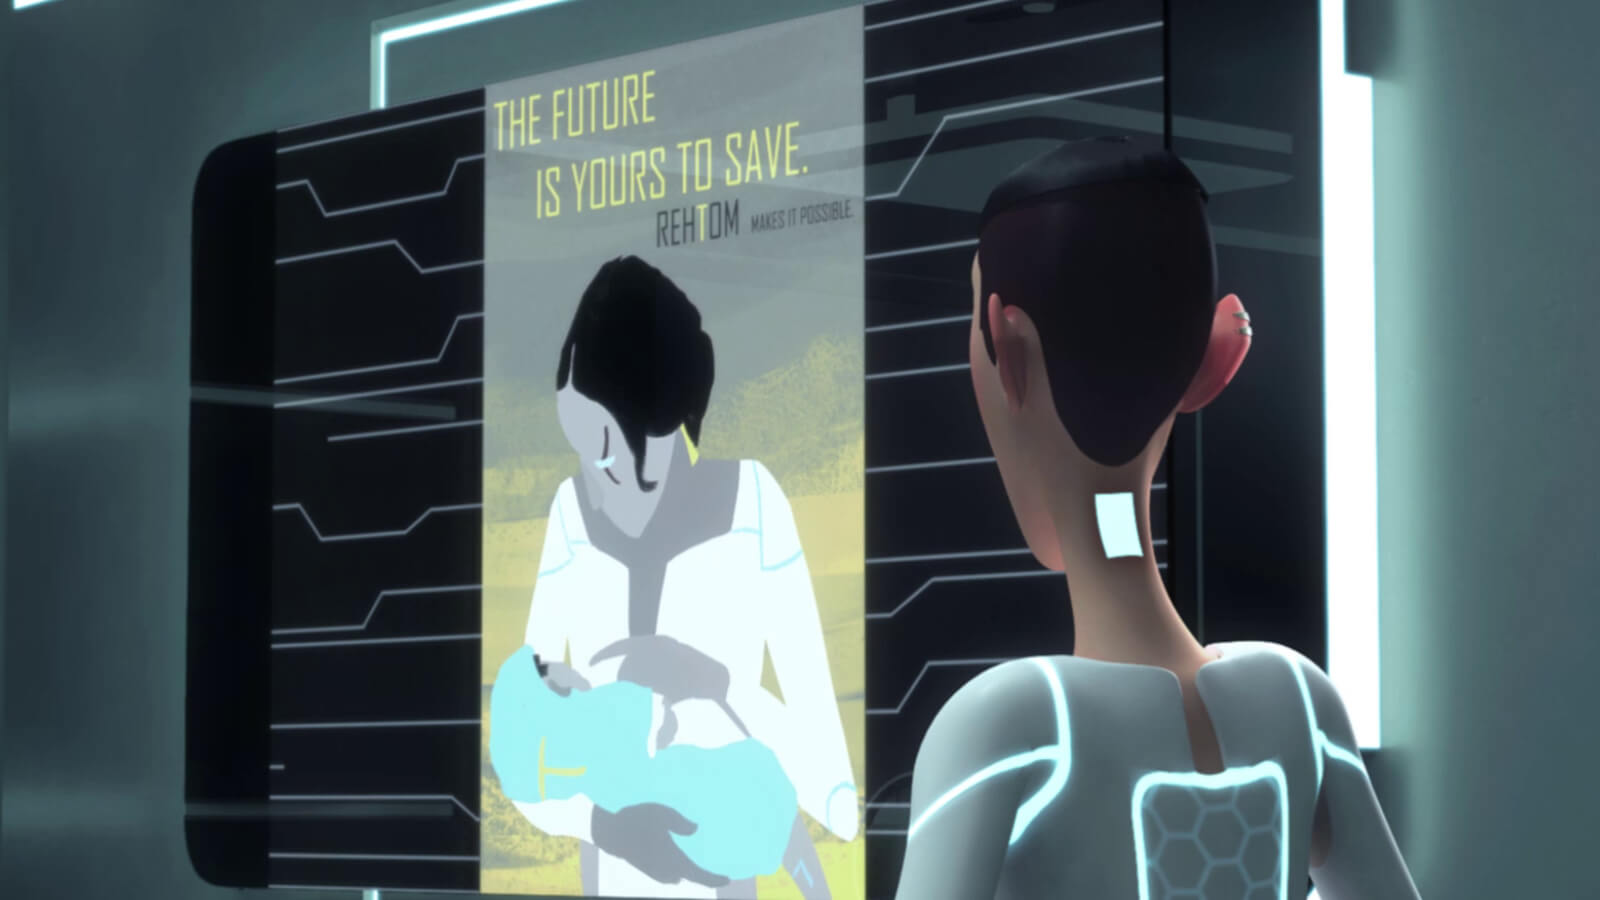 Una persona en un entorno futurista mira el cartel de una madre con un niño en brazos, con &quot;Tú puedes salvar el futuro&quot;.